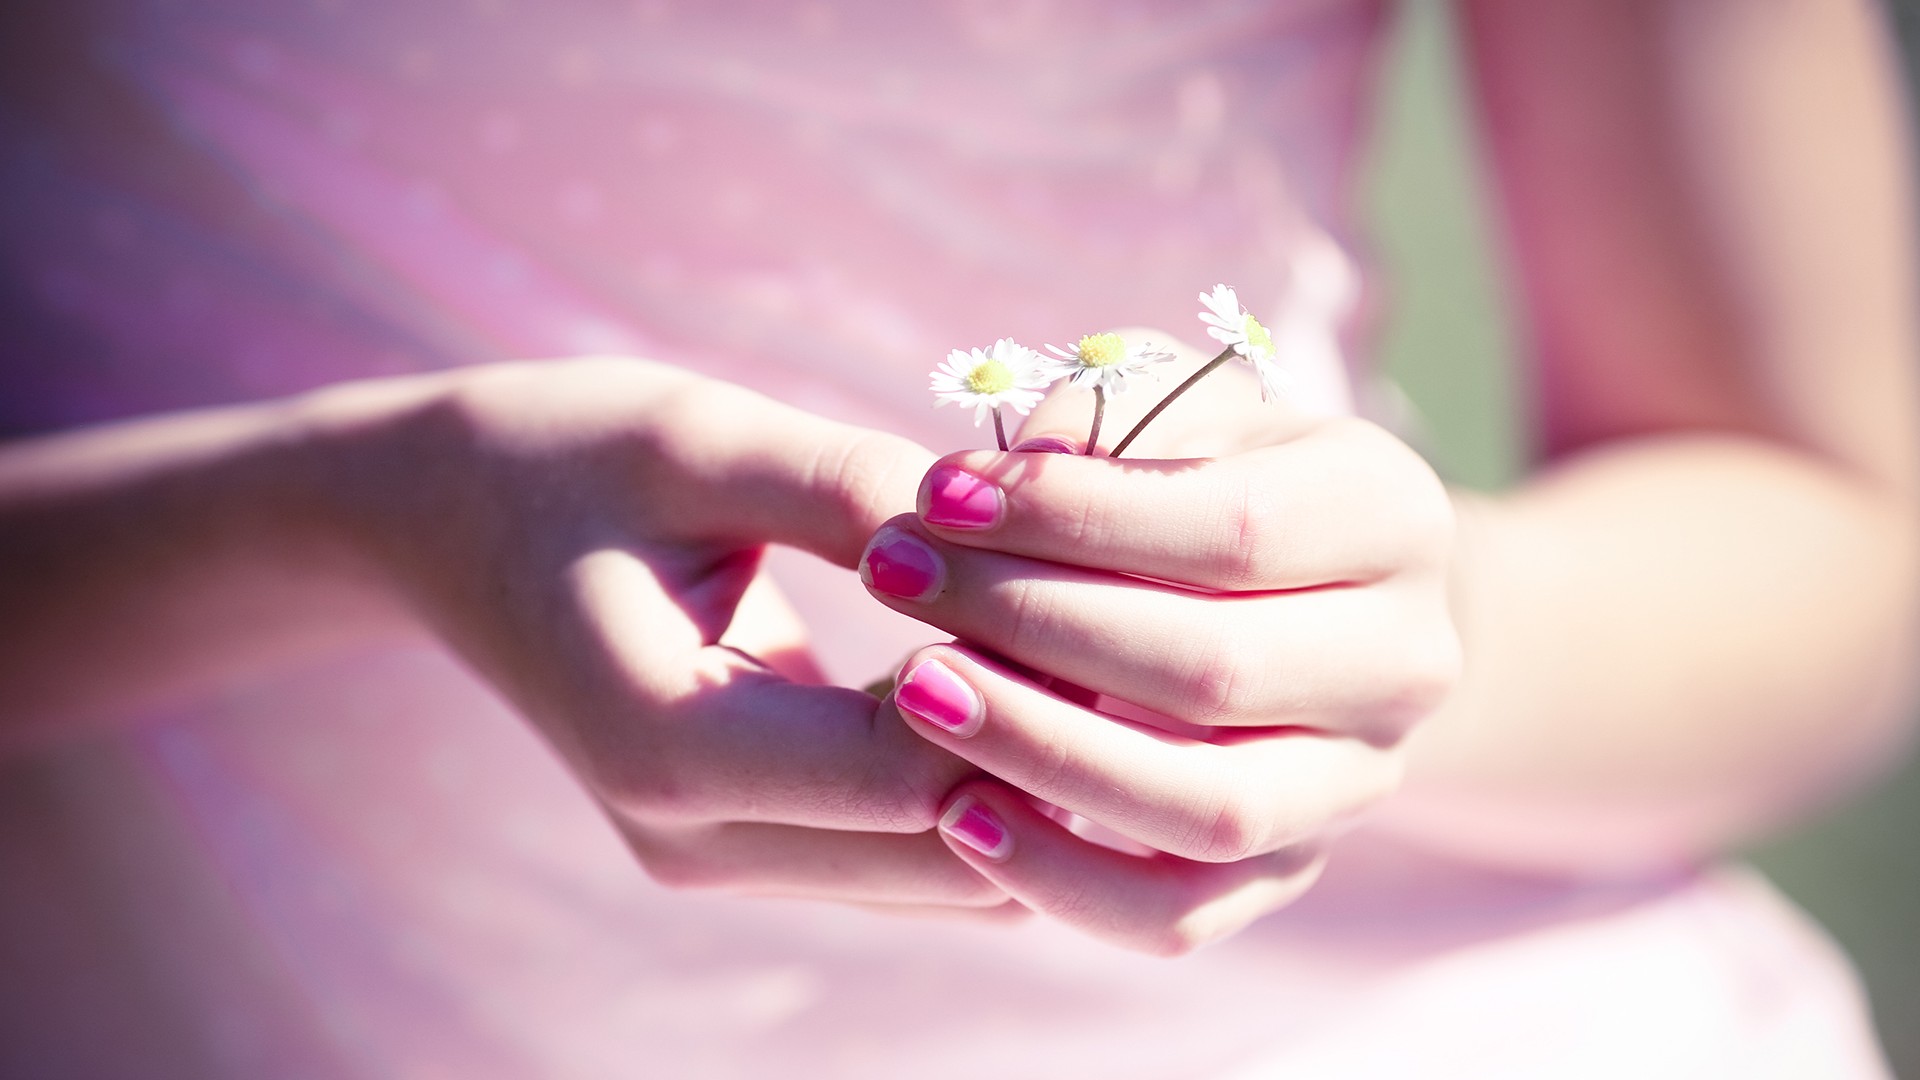 唯美女孩,粉红指甲,小花,桌面壁纸